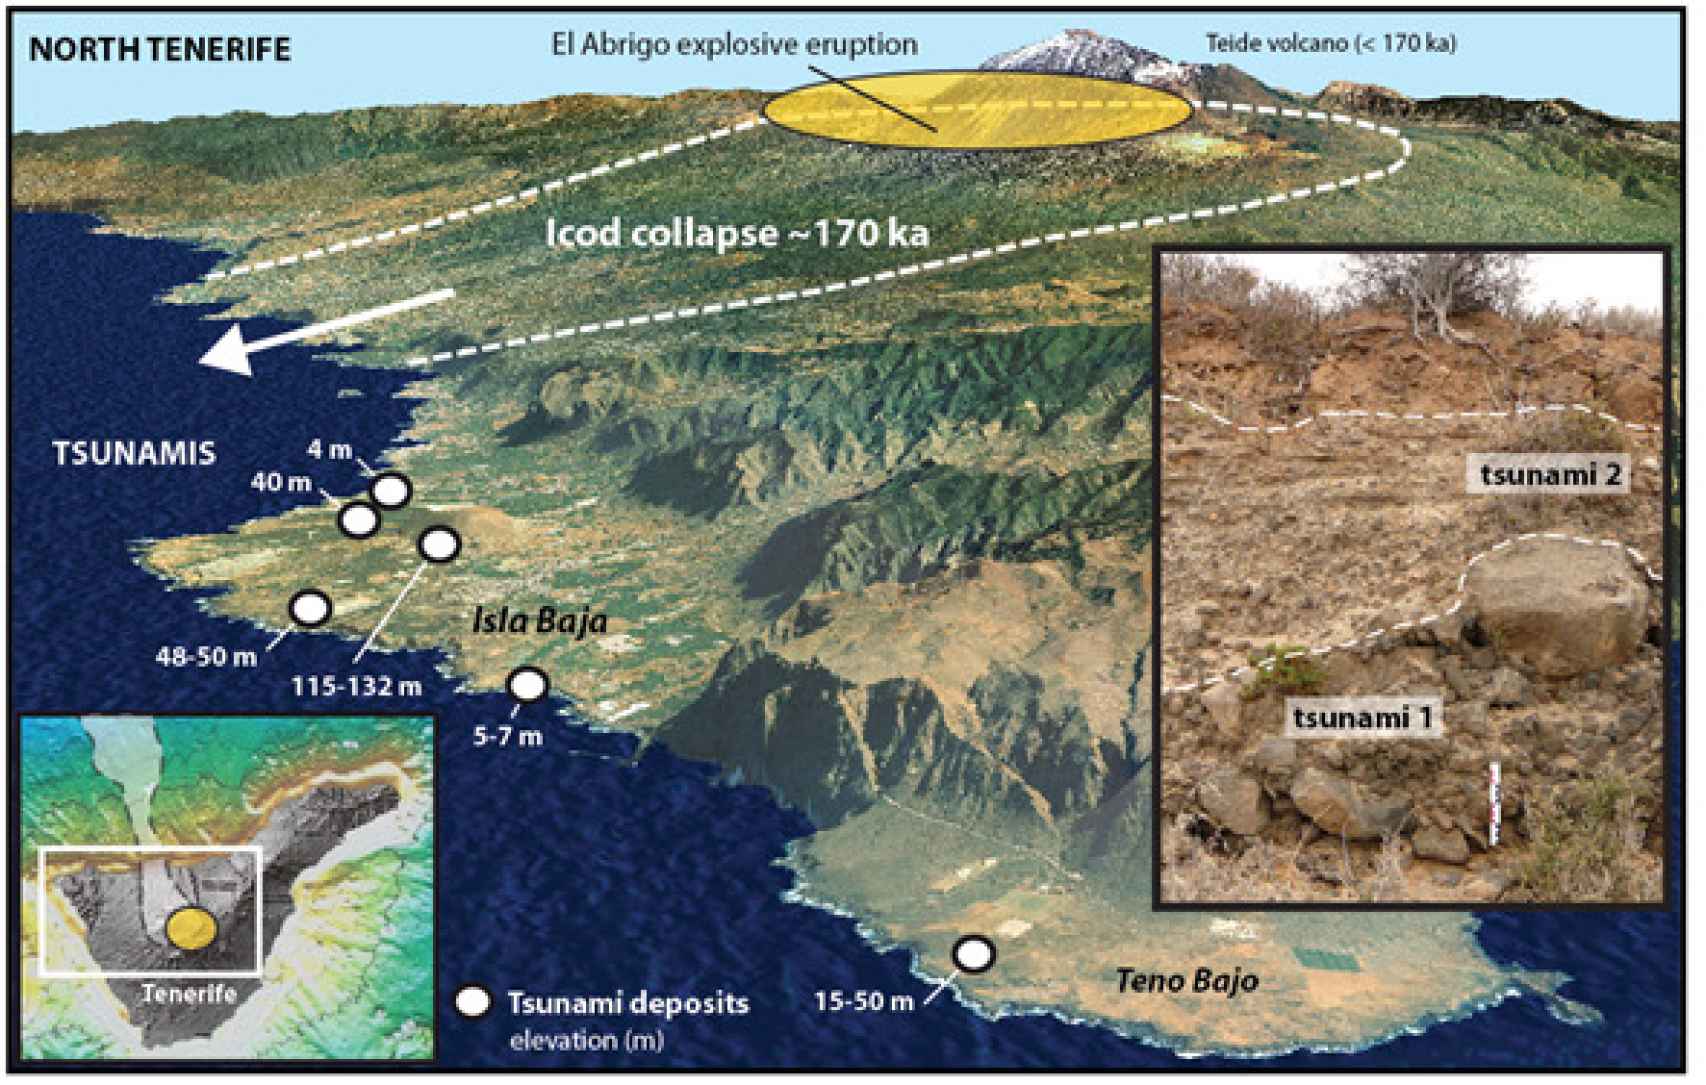 Los restos de la erupción, el movimiento de tierra y el tsunami de hace 170.000 años en Tenerife. Paris et al., 2017/Nature Communications.